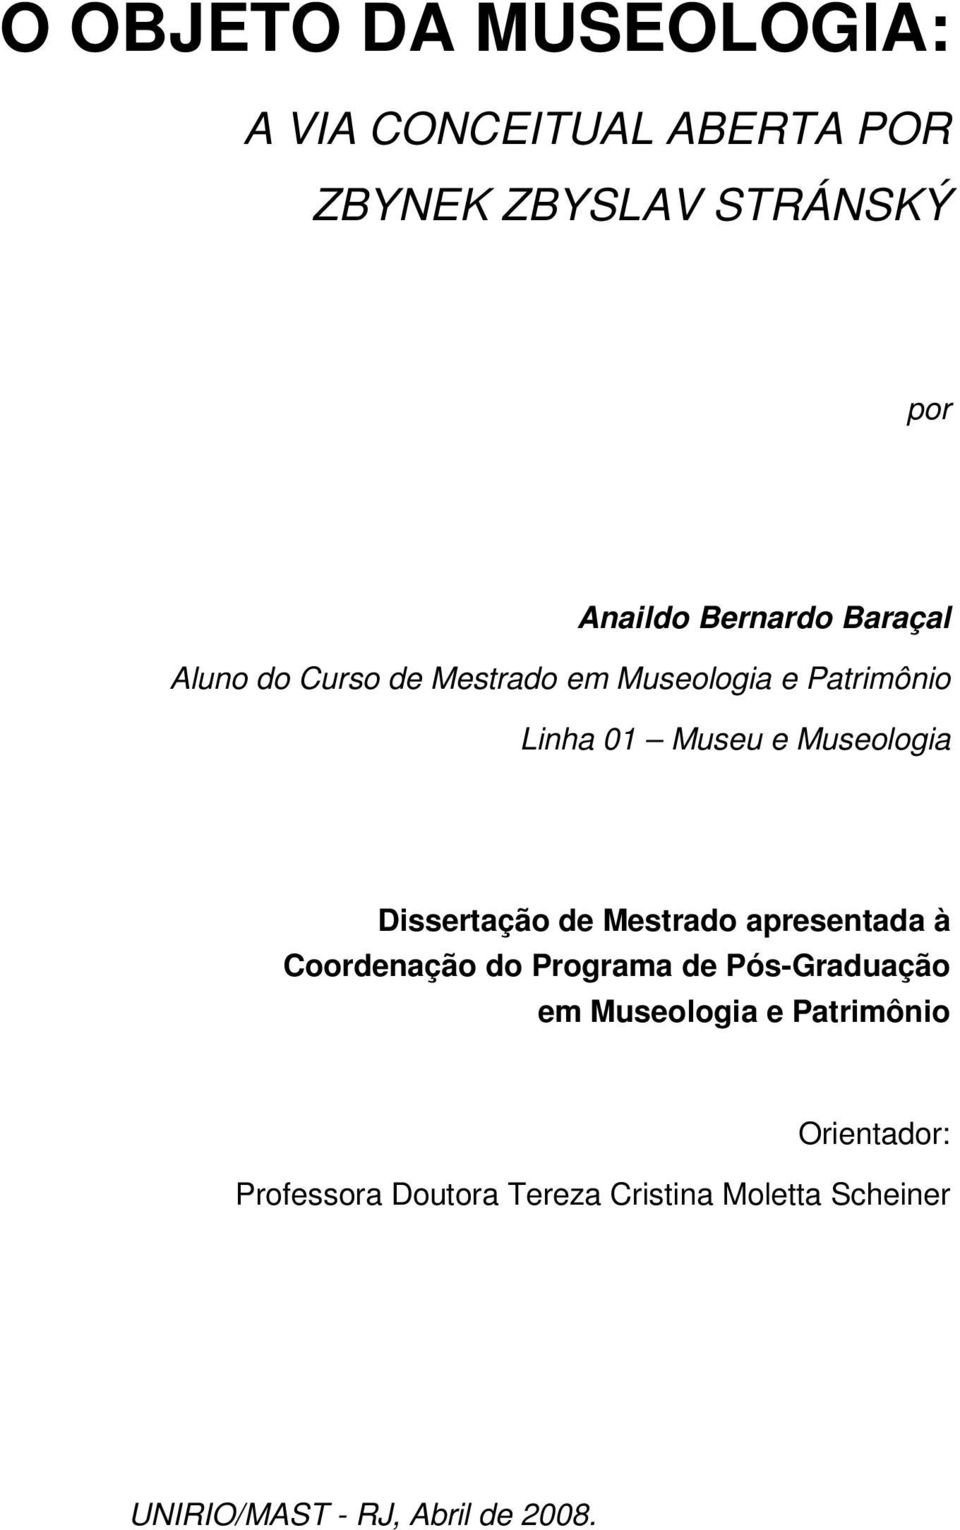 Dissertação de Mestrado apresentada à Coordenação do Programa de Pós-Graduação em Museologia e